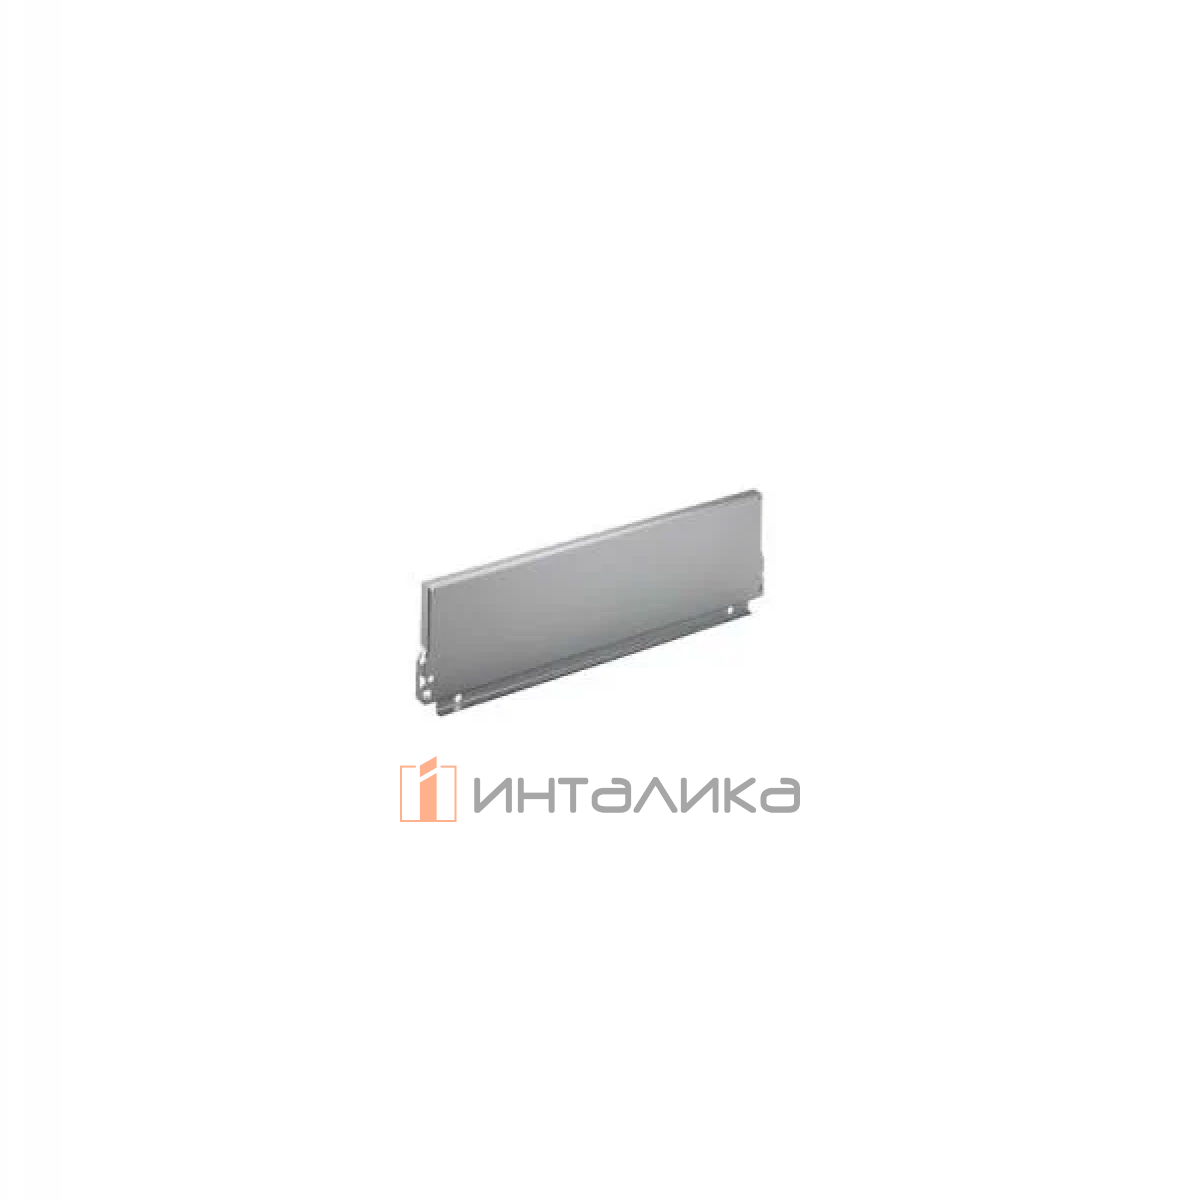 Задняя стенка HETTICH InnoTech/InnoTech Atira, высота 144мм, H1200 мм, сталь, цвет серебристый, (V10)